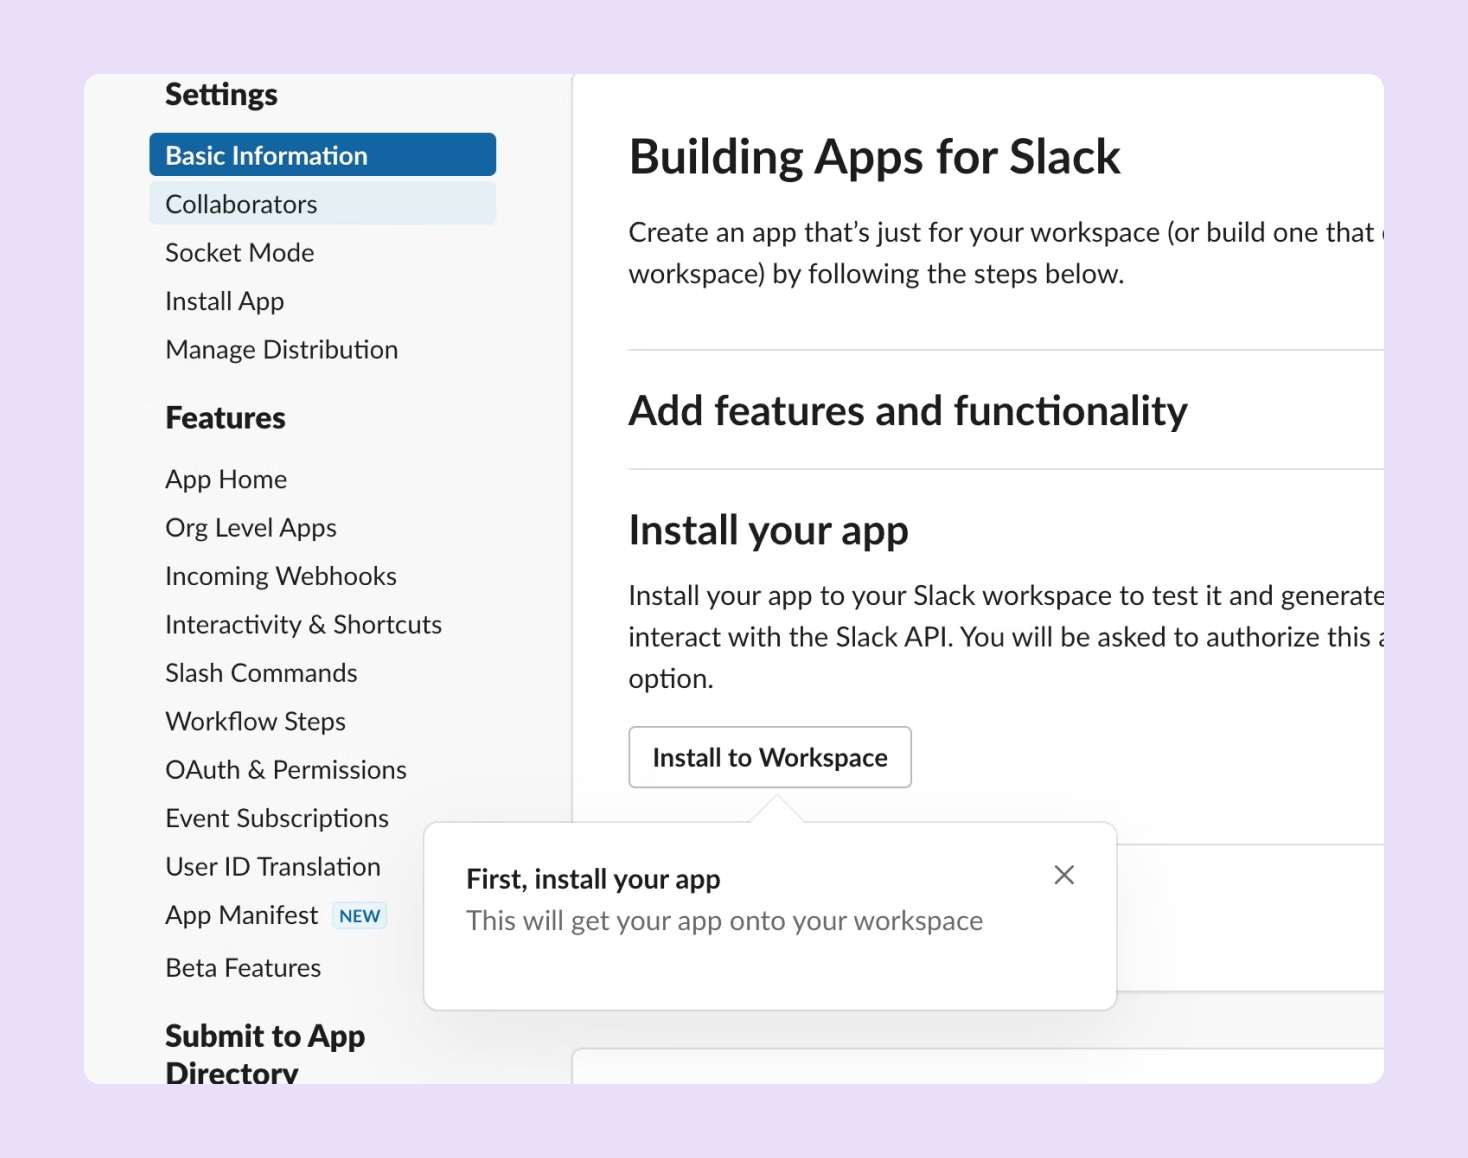 Building apps for Slack - installing an app on your Slack workspace